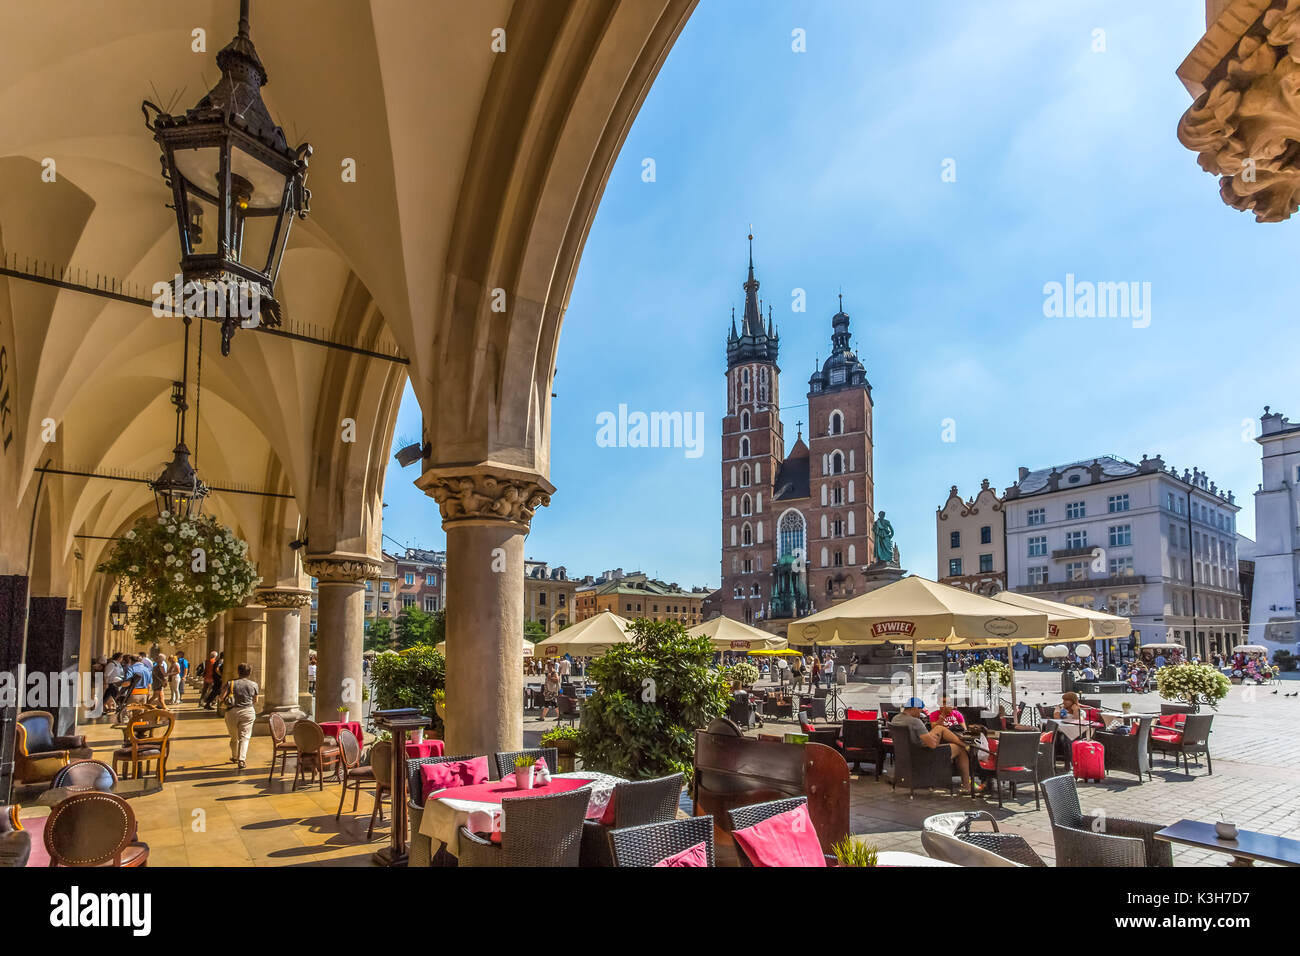 Poland, Krakow City, Market Square, St. Mary's Basilica Stock Photo